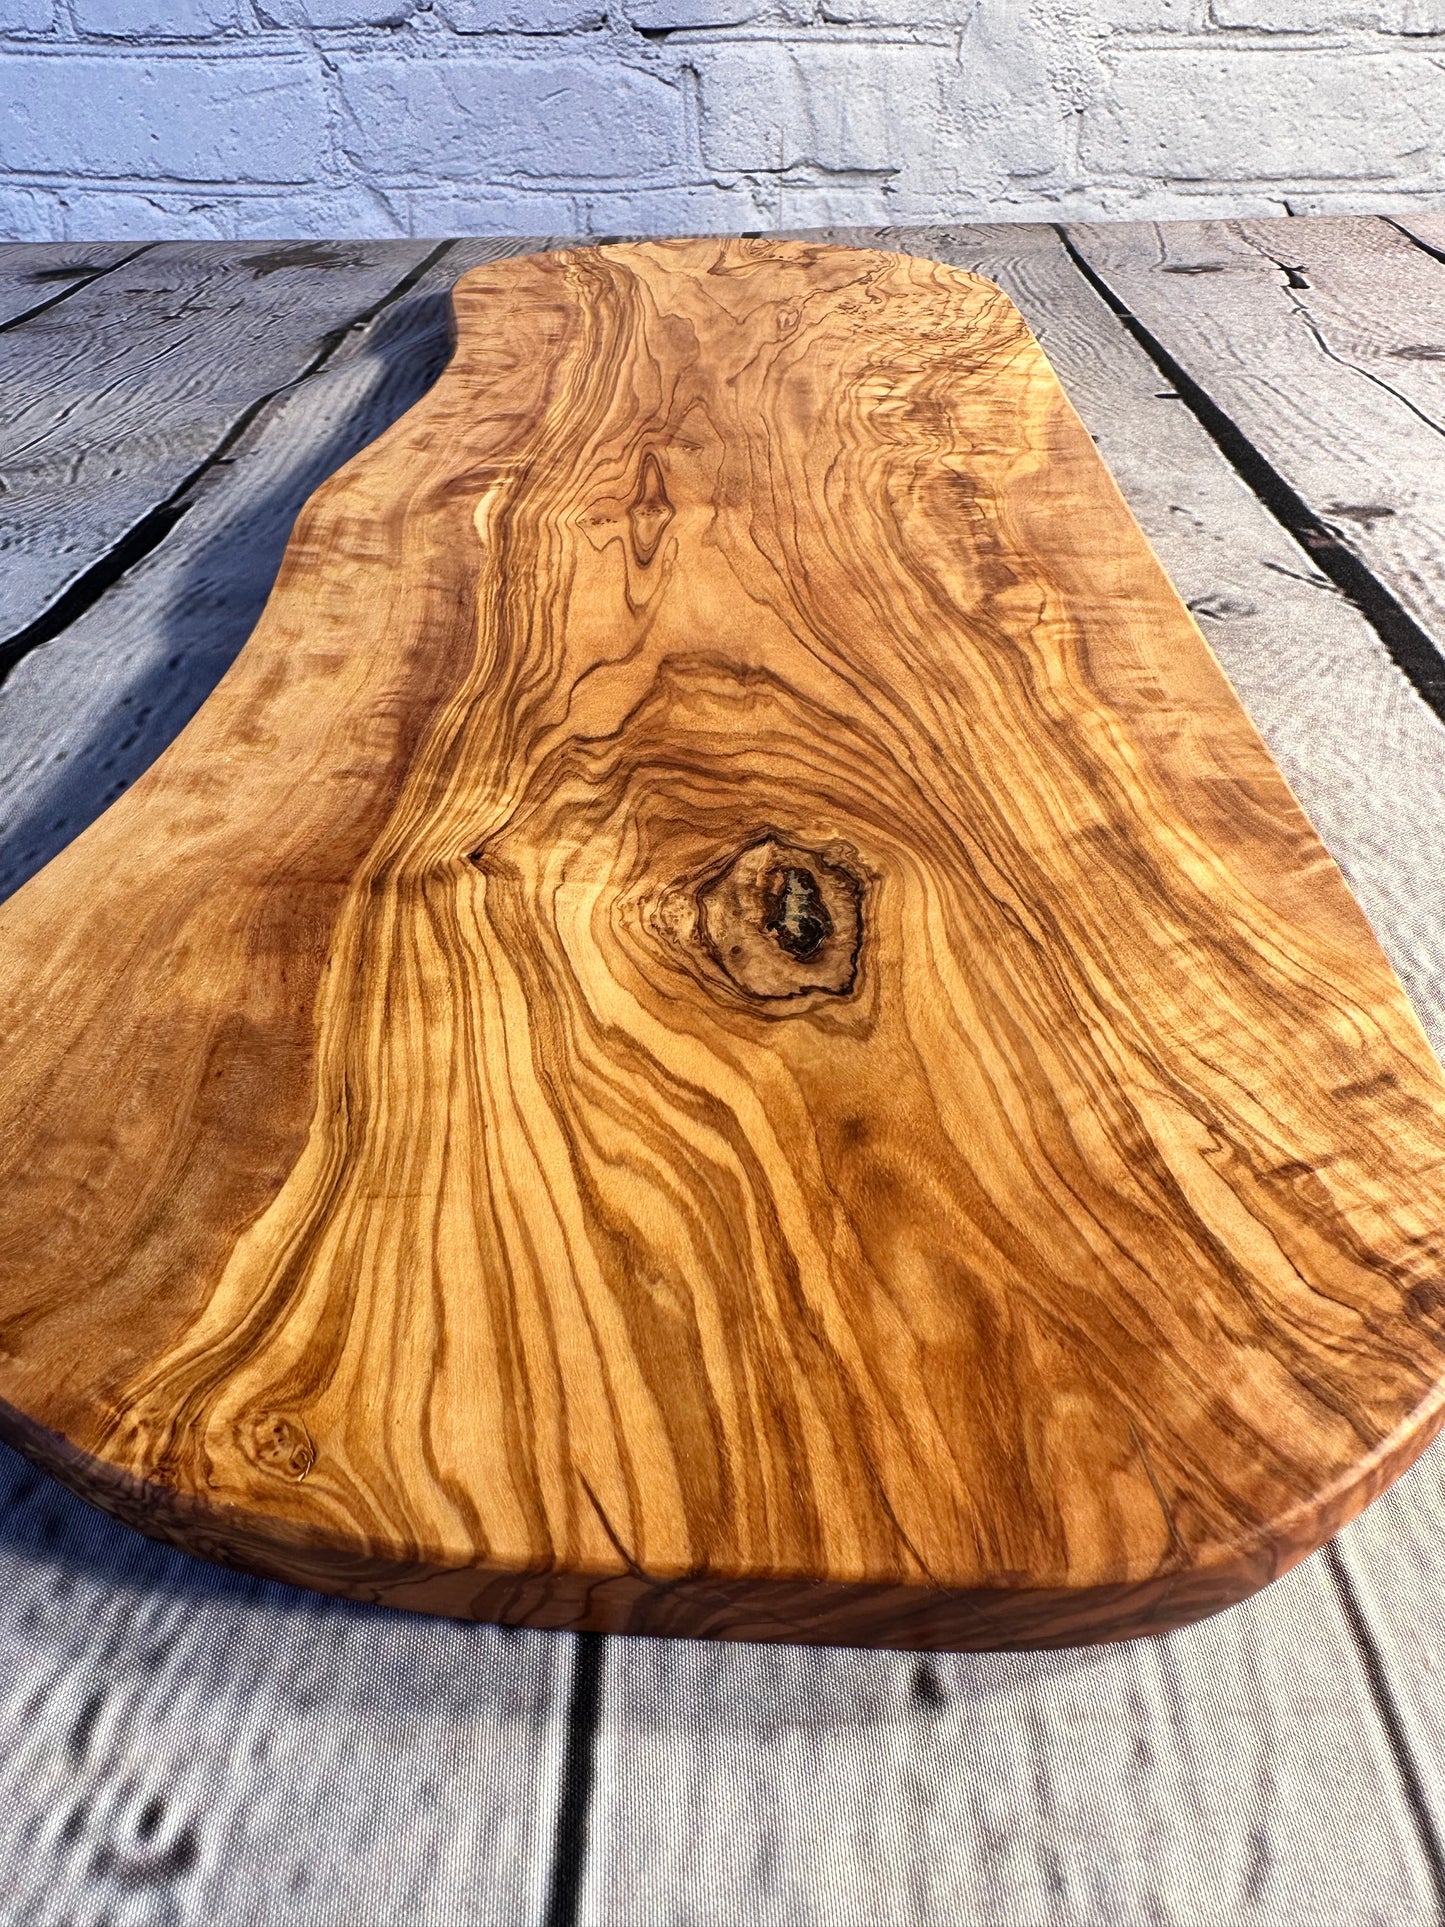 Striking Olive Wood Board